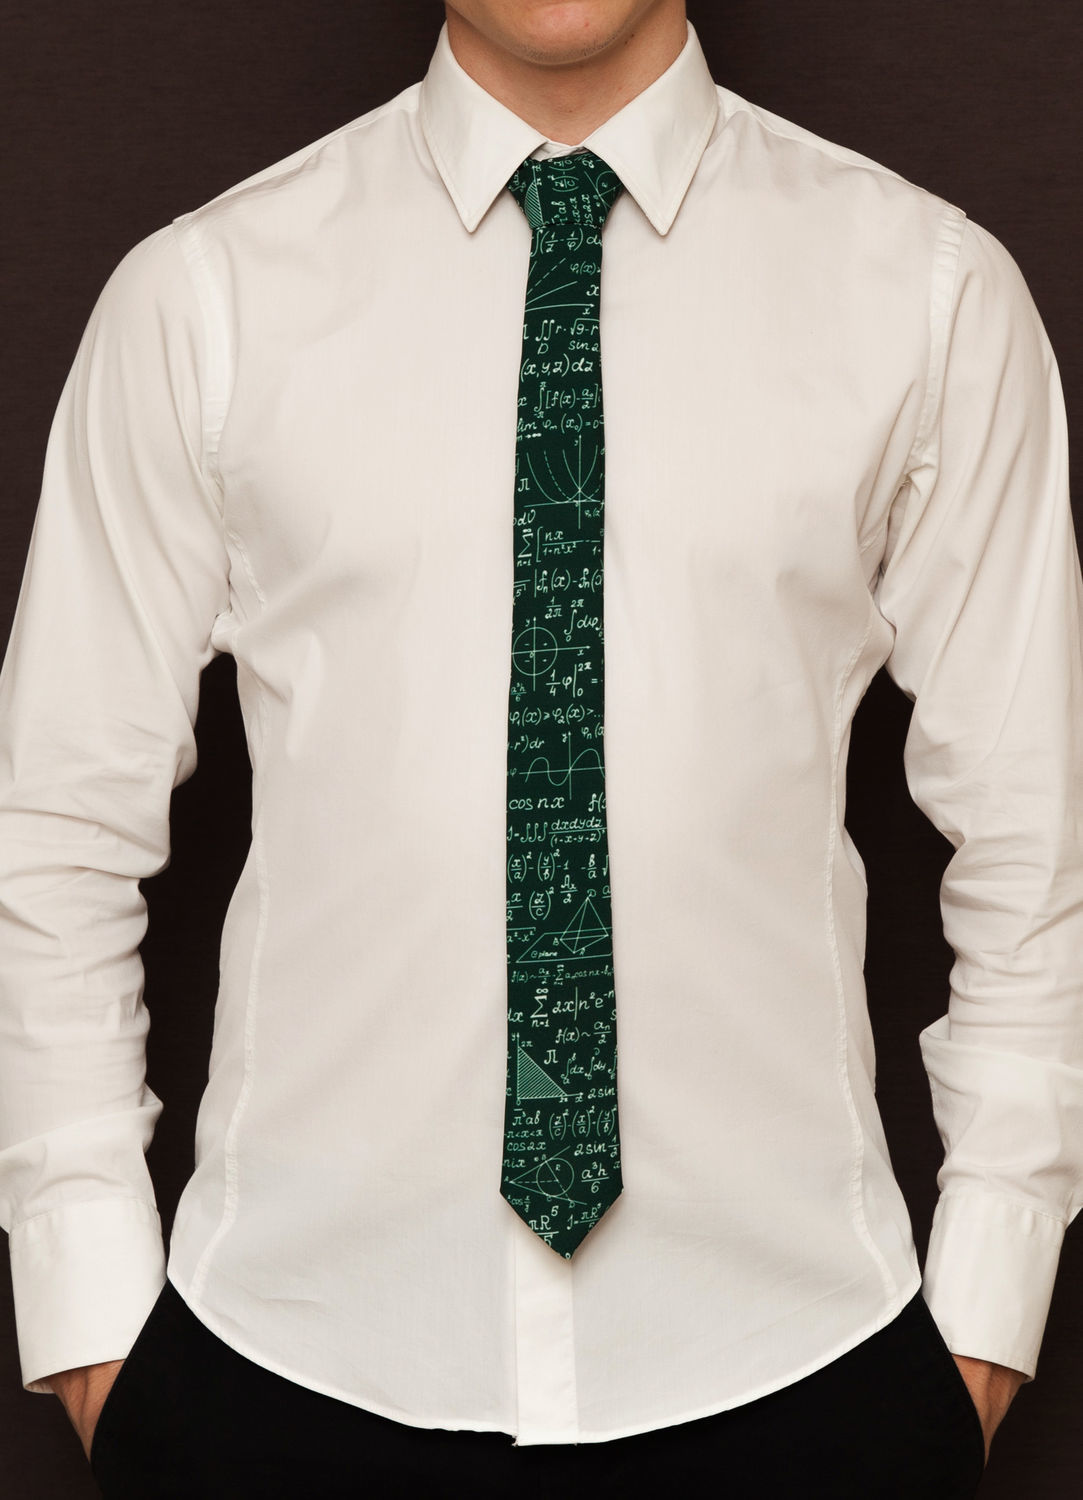 Виды рубашек и галстуков